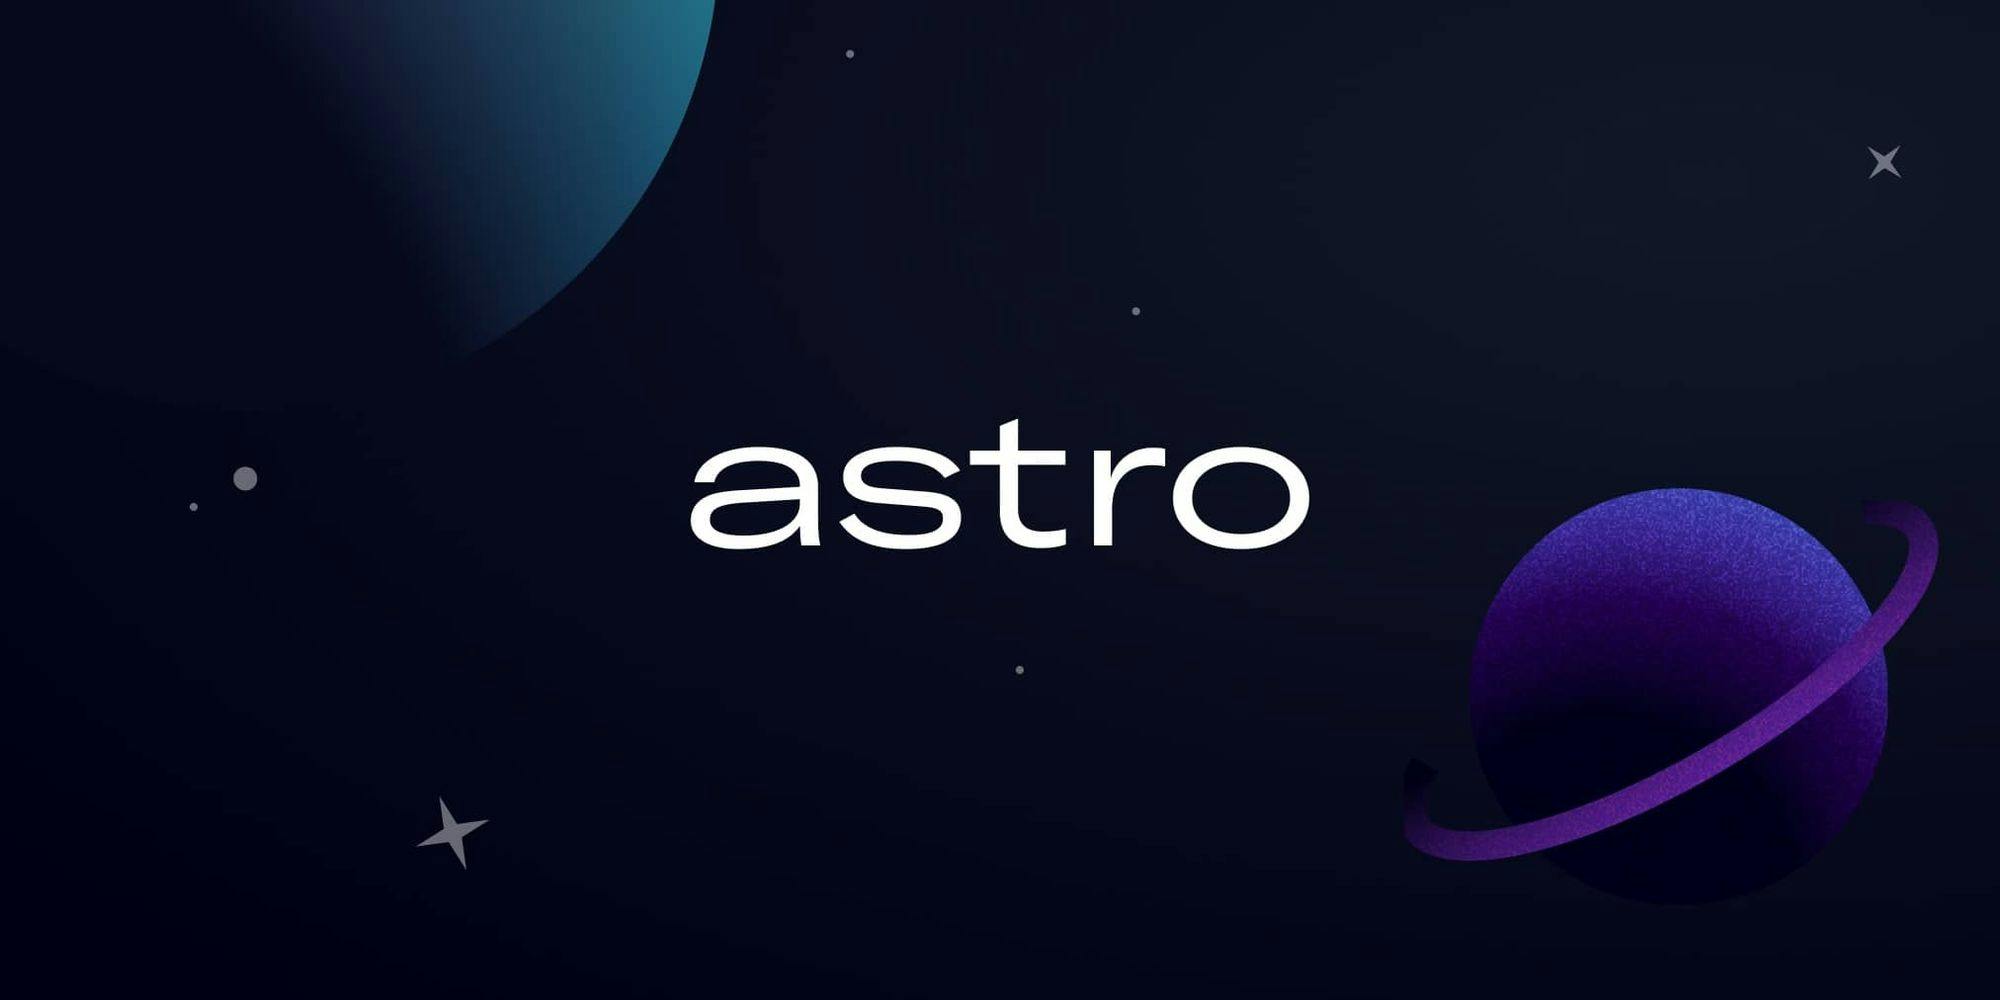 I Rewrote My First Portfolio in Astro